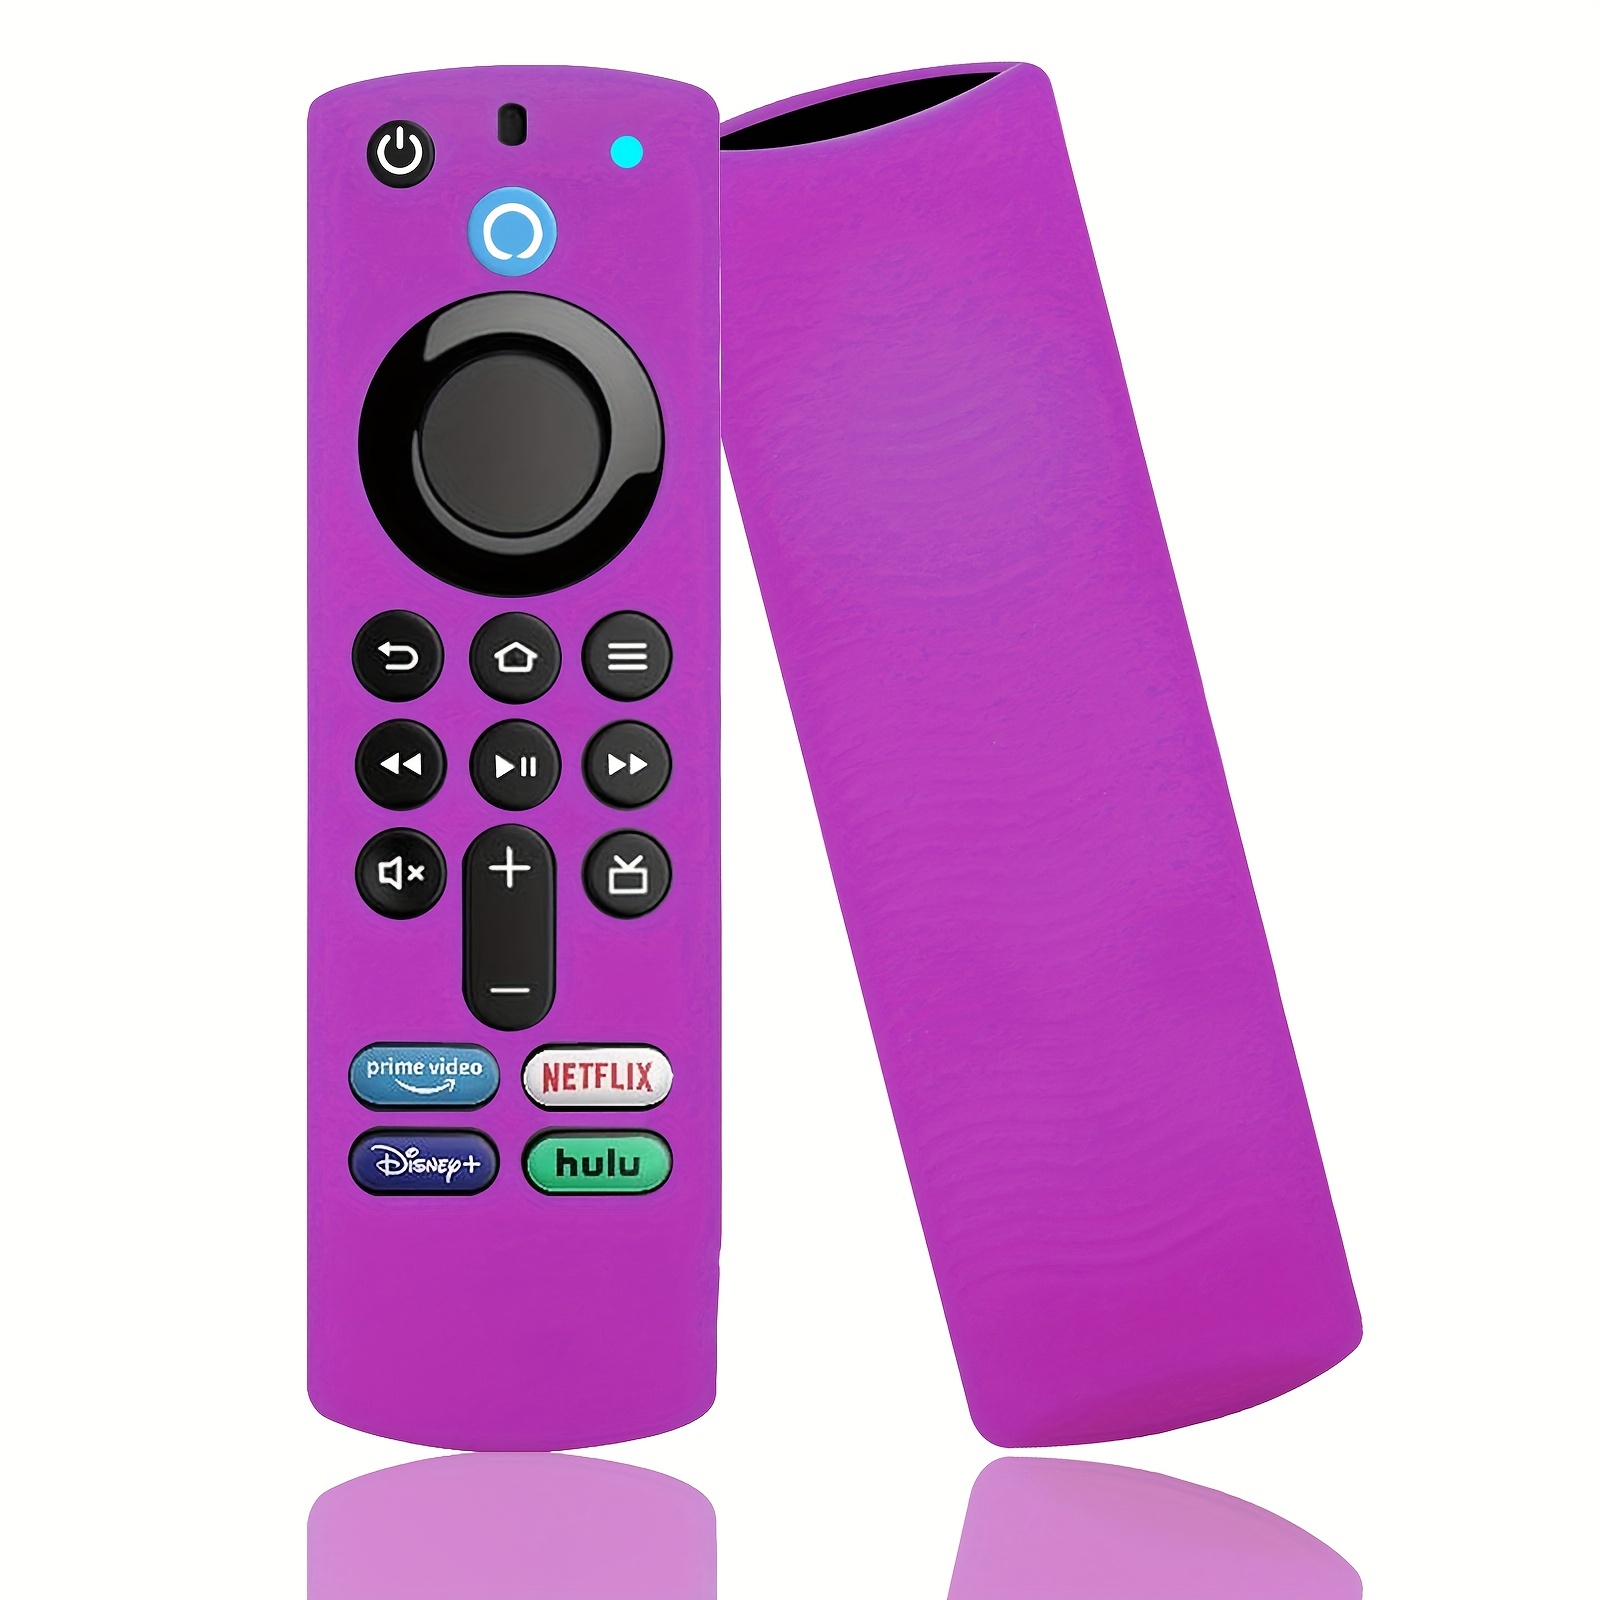 Funda protectora para mando a distancia Protector de piel con cordón  Kuymtek desmontable antipérdida para  Fire TV Stick Lite Smart TV